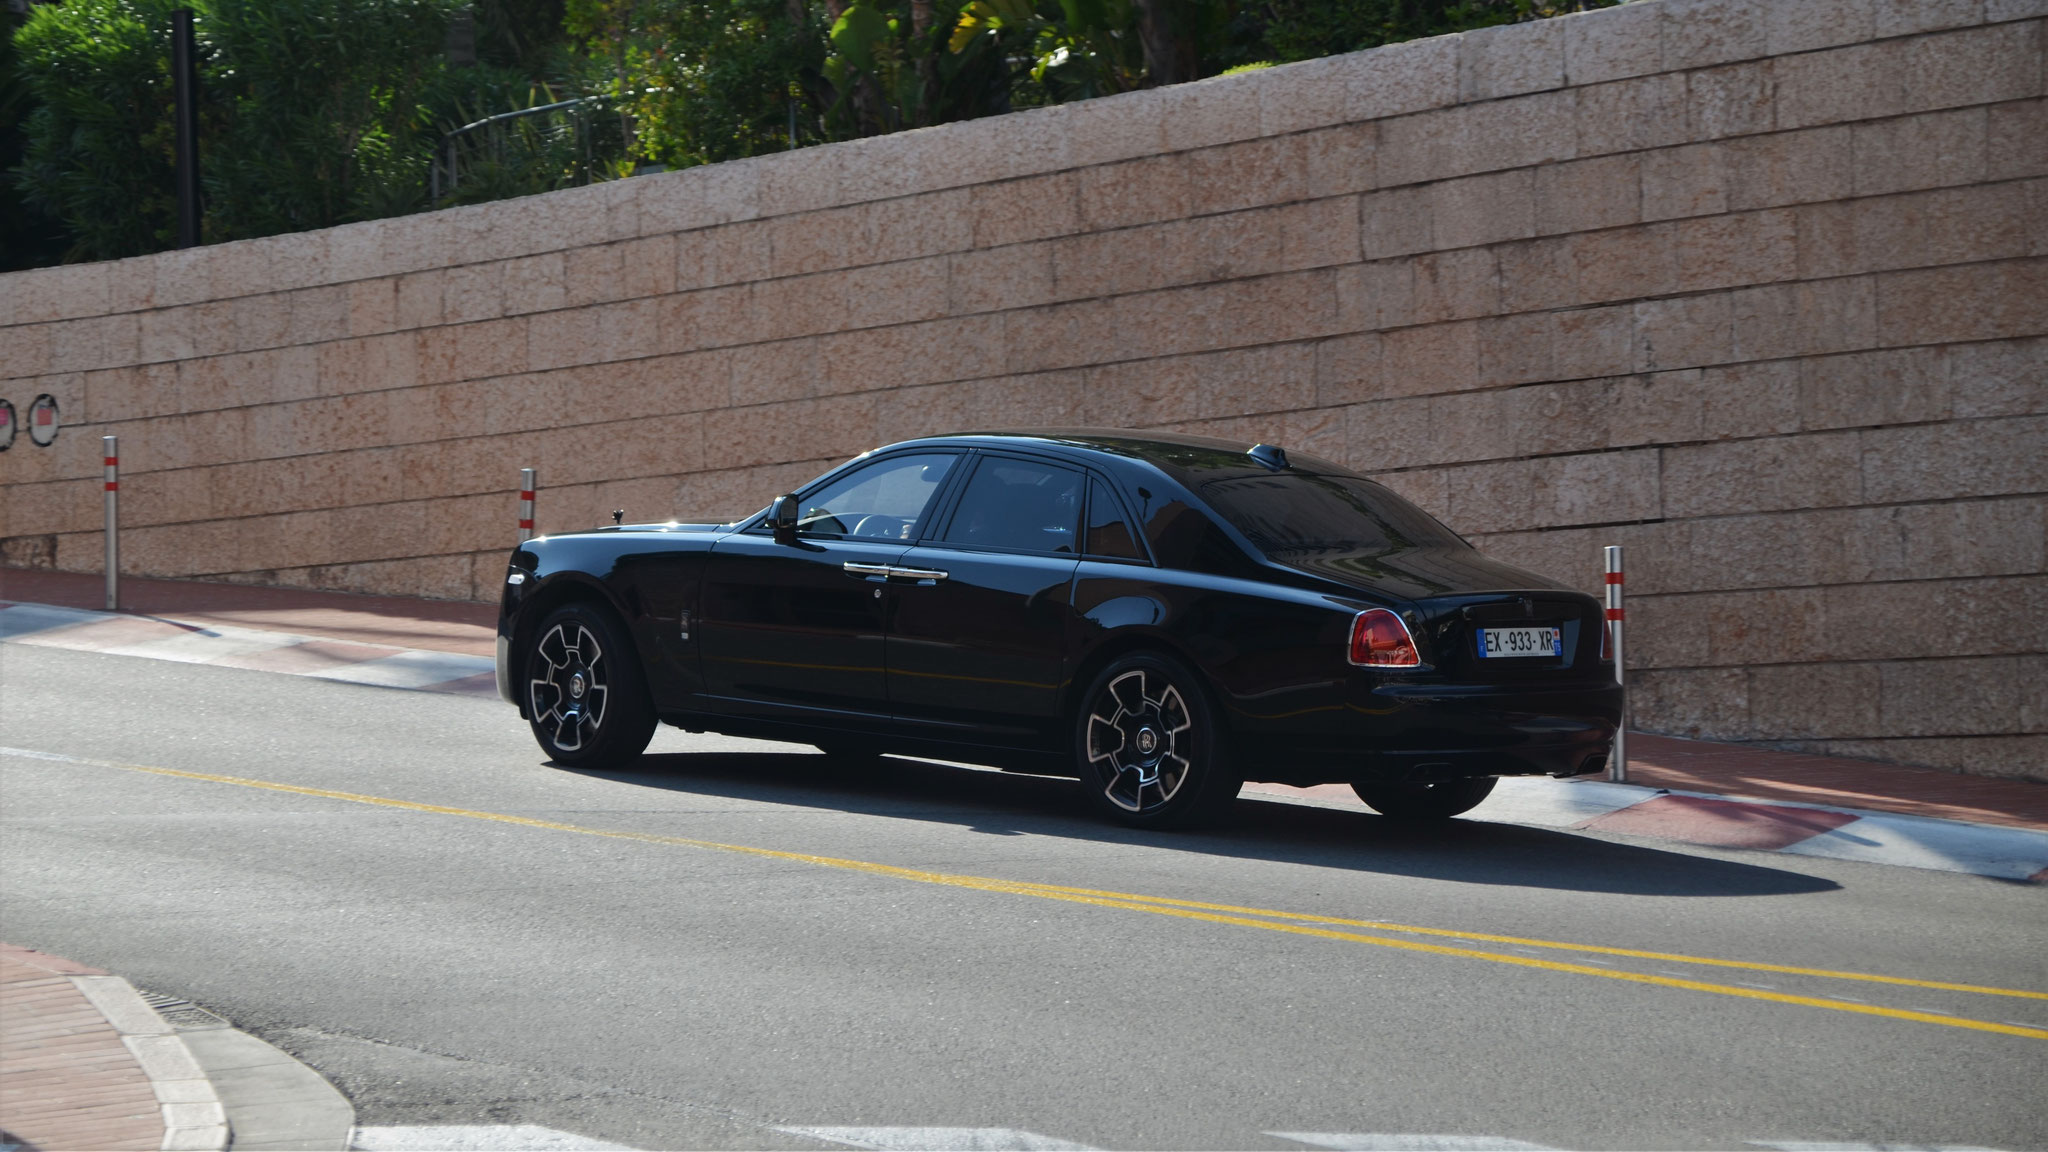 Rolls Royce Ghost Series II Black Badge - EX-933-XR-75 (FRA)